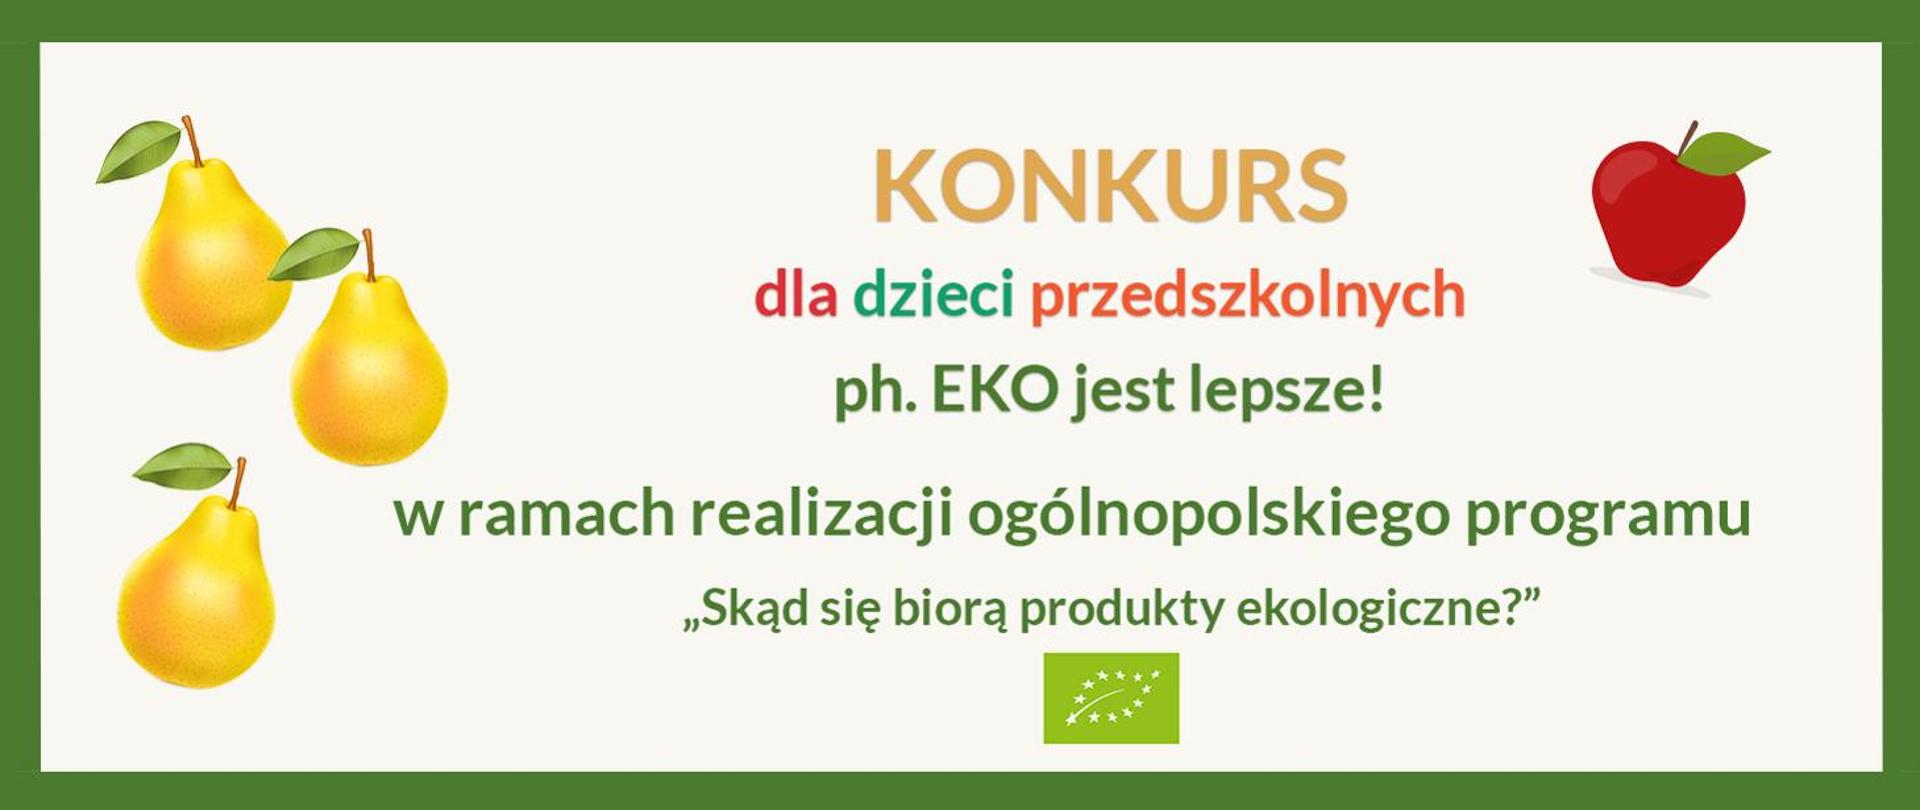 Napis: KONKURS dla dzieci przedszkolnych pod hasłem EKO jest lepsze! w ramach realizacji ogólnopolskiego programu "Skąd się biorą produkty ekologiczne?" na tle owoców.